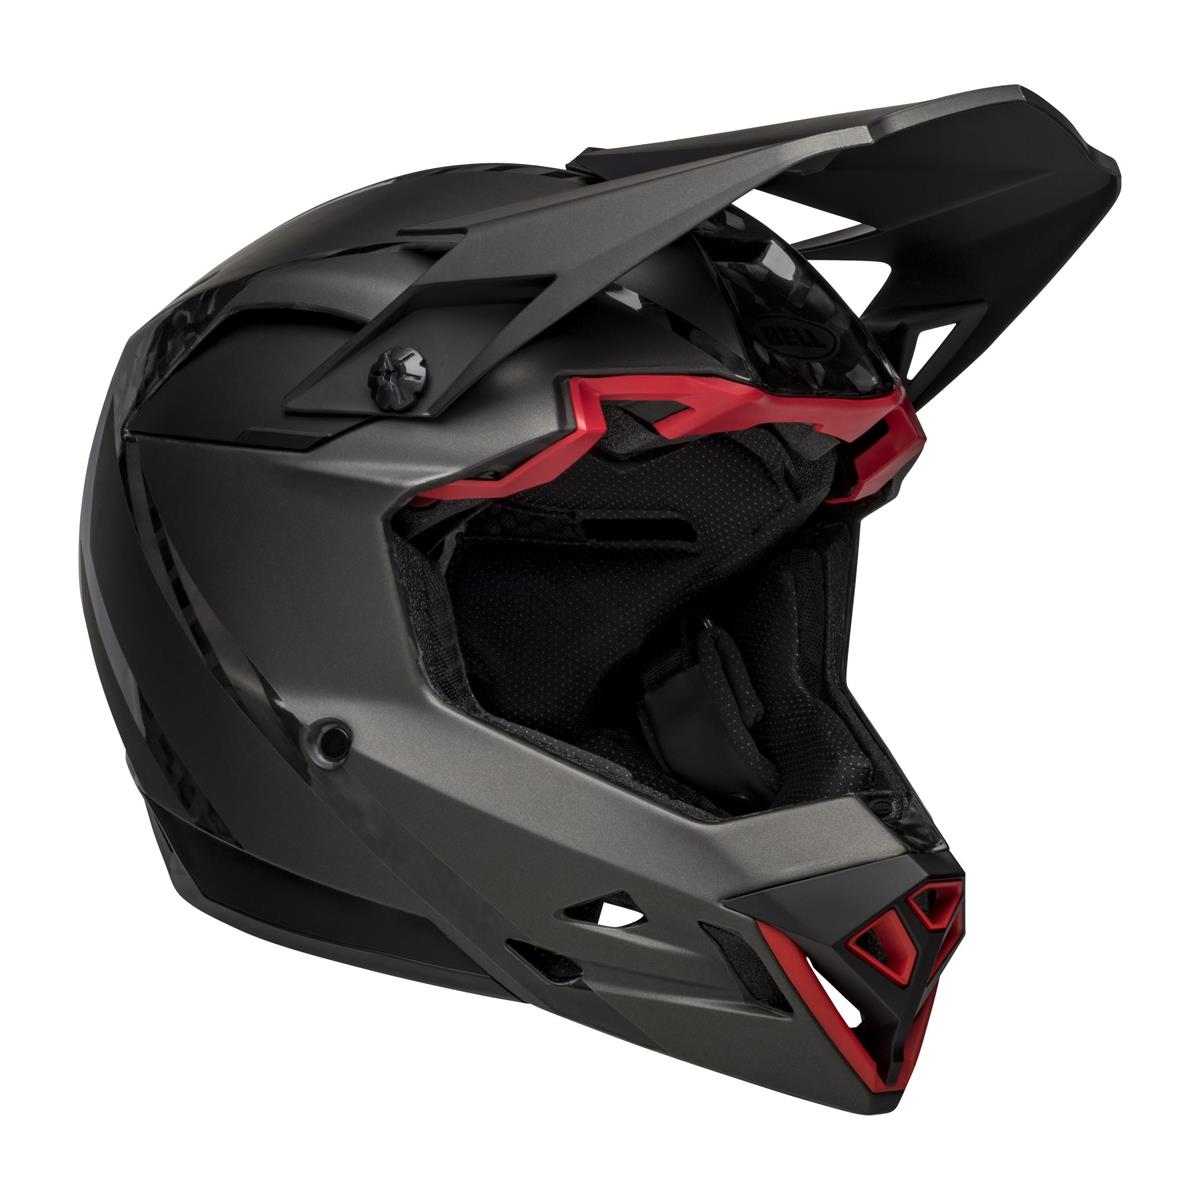 Full-10 Spherical Arise Matte / Gloss Black Carbon Full Face Helmet Size XS/S (51-55cm)